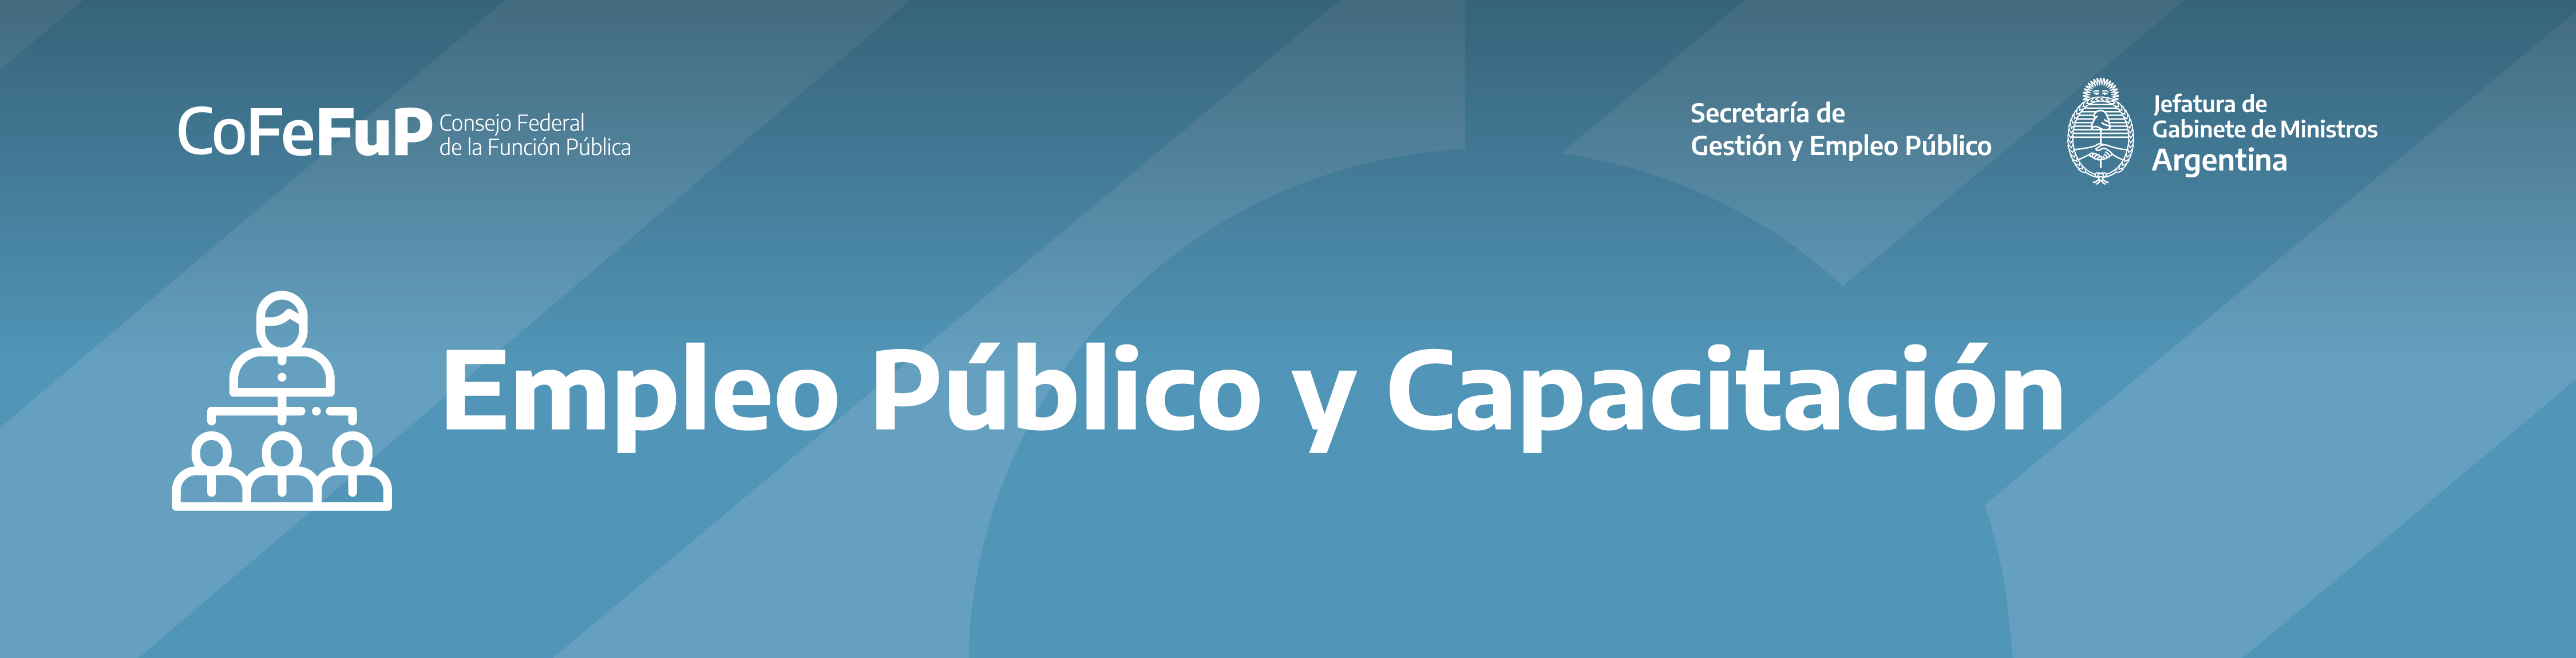 Comisión de Empleo Público y Capacitación del CoFeFuP